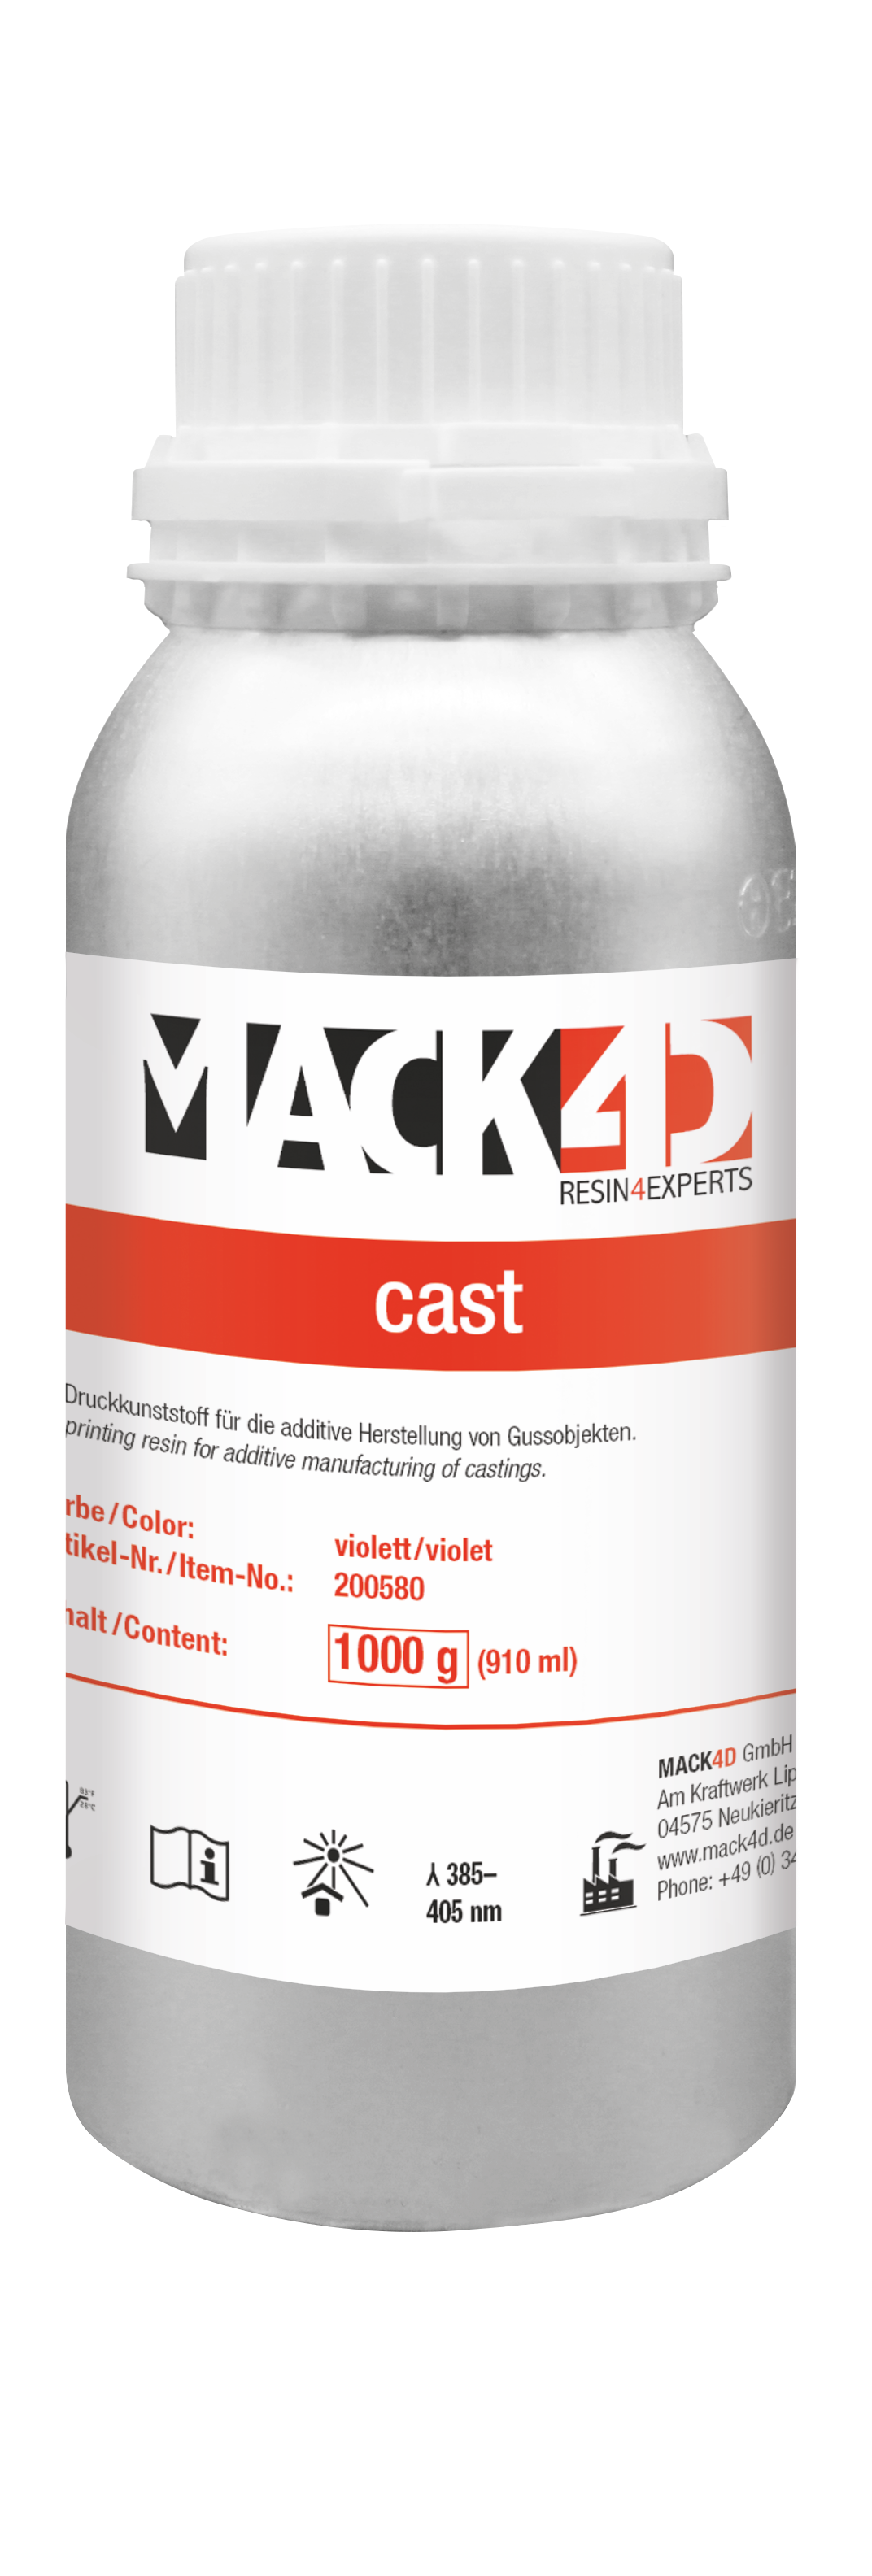 MACK4D - Tiko-G Pro jewel  cast